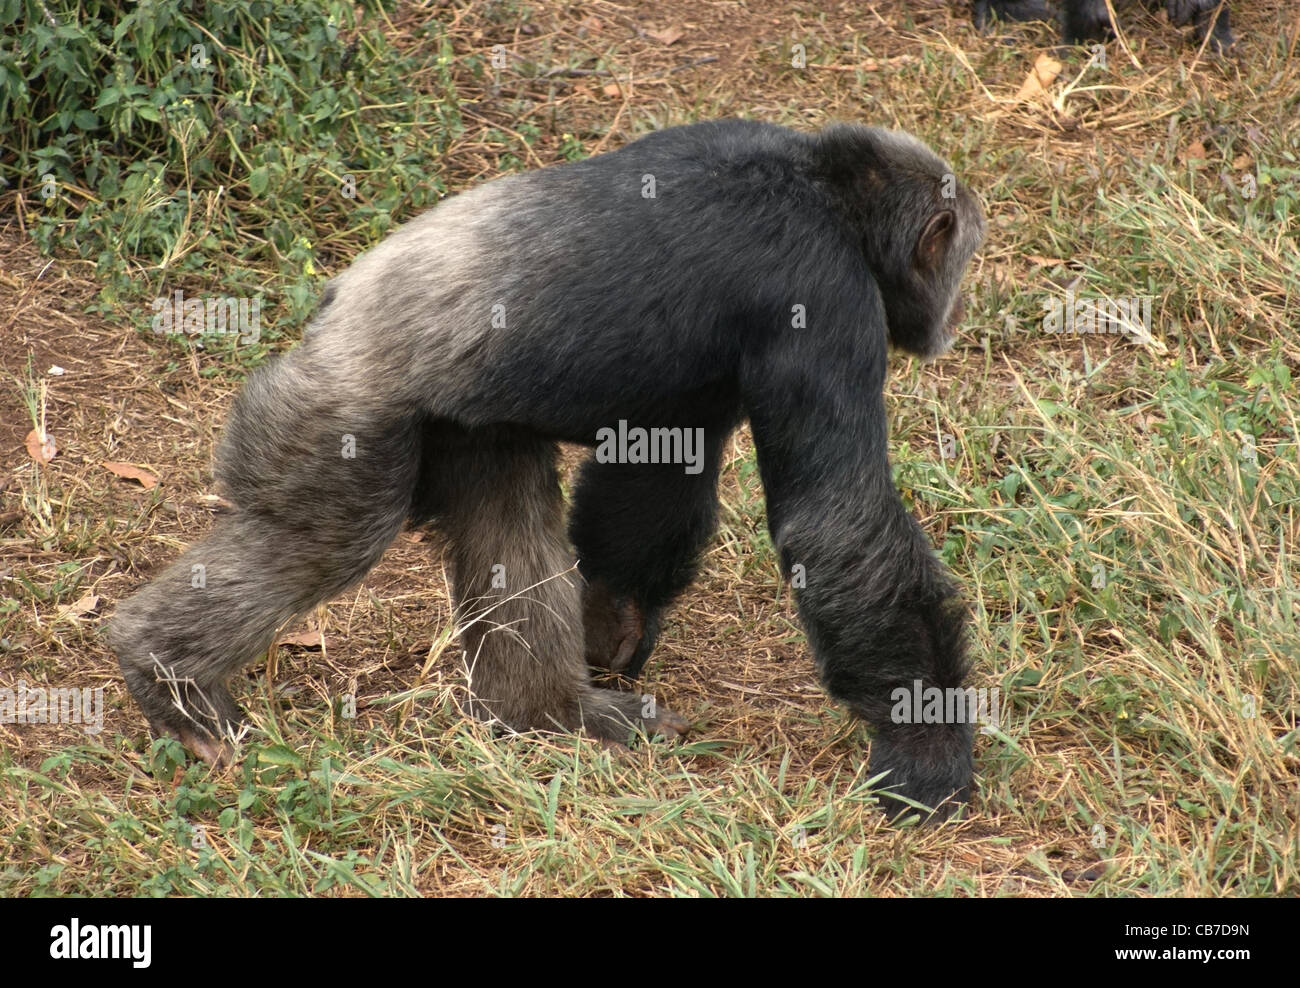 Colpo all'aperto in Uganda (Africa) che mostra uno scimpanzé di camminare in ambiente erboso Foto Stock